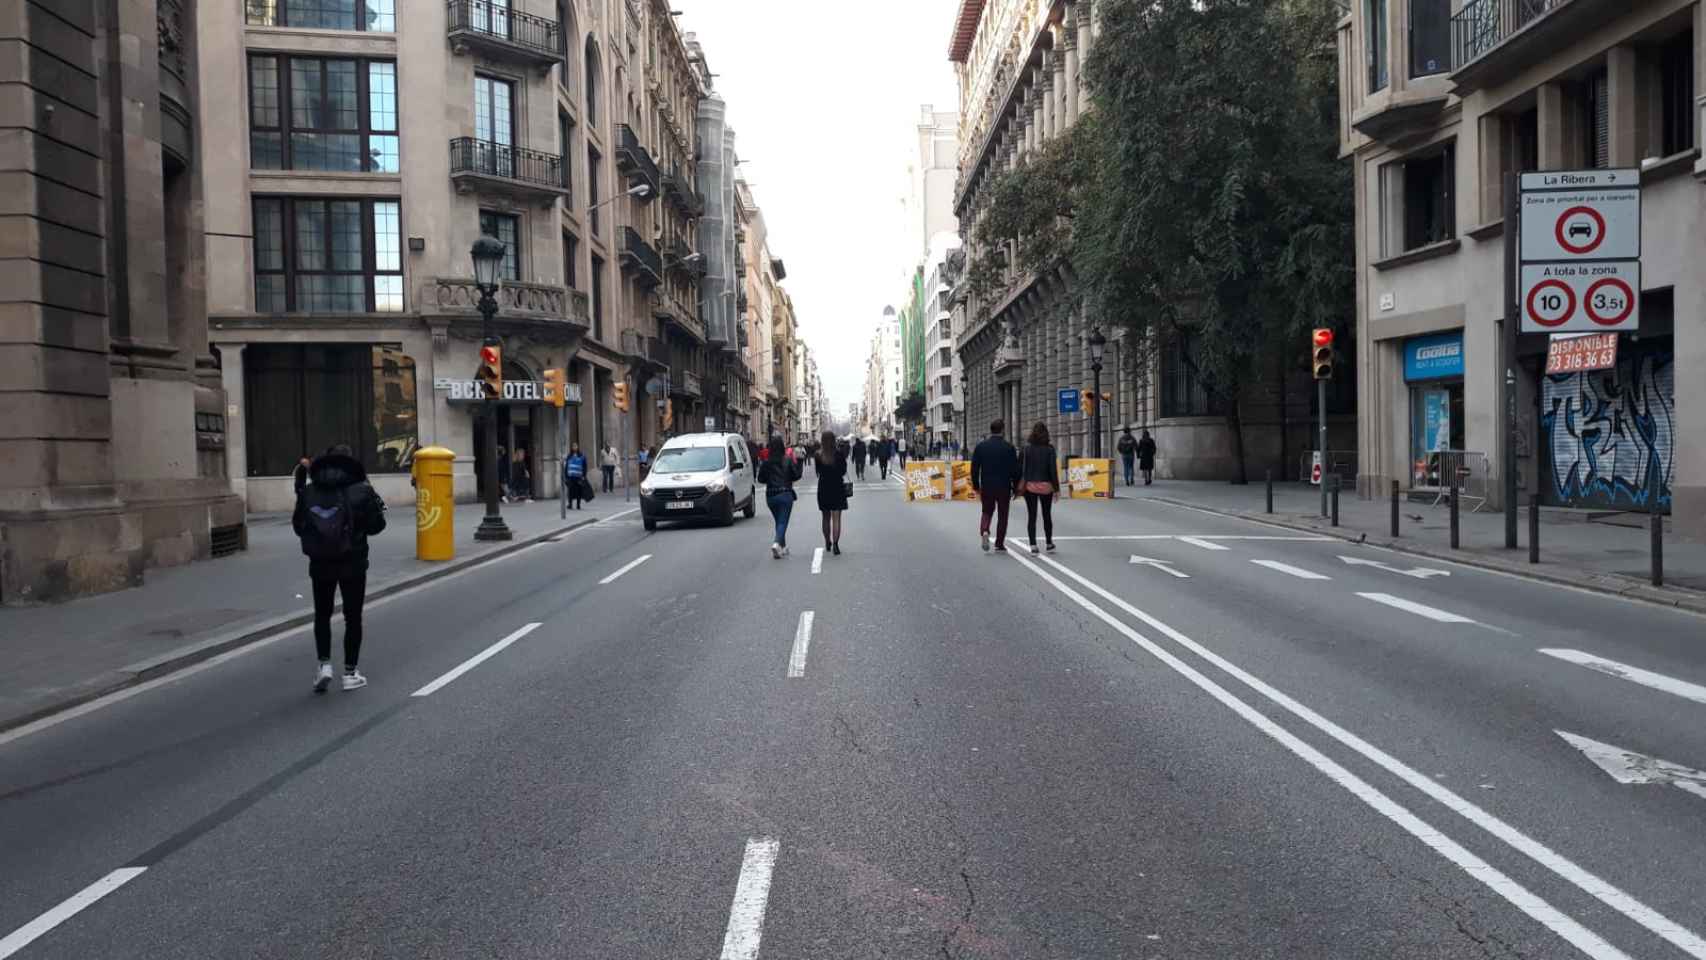 Una furgoneta circula entre unos peatones en Via Laietana / M A